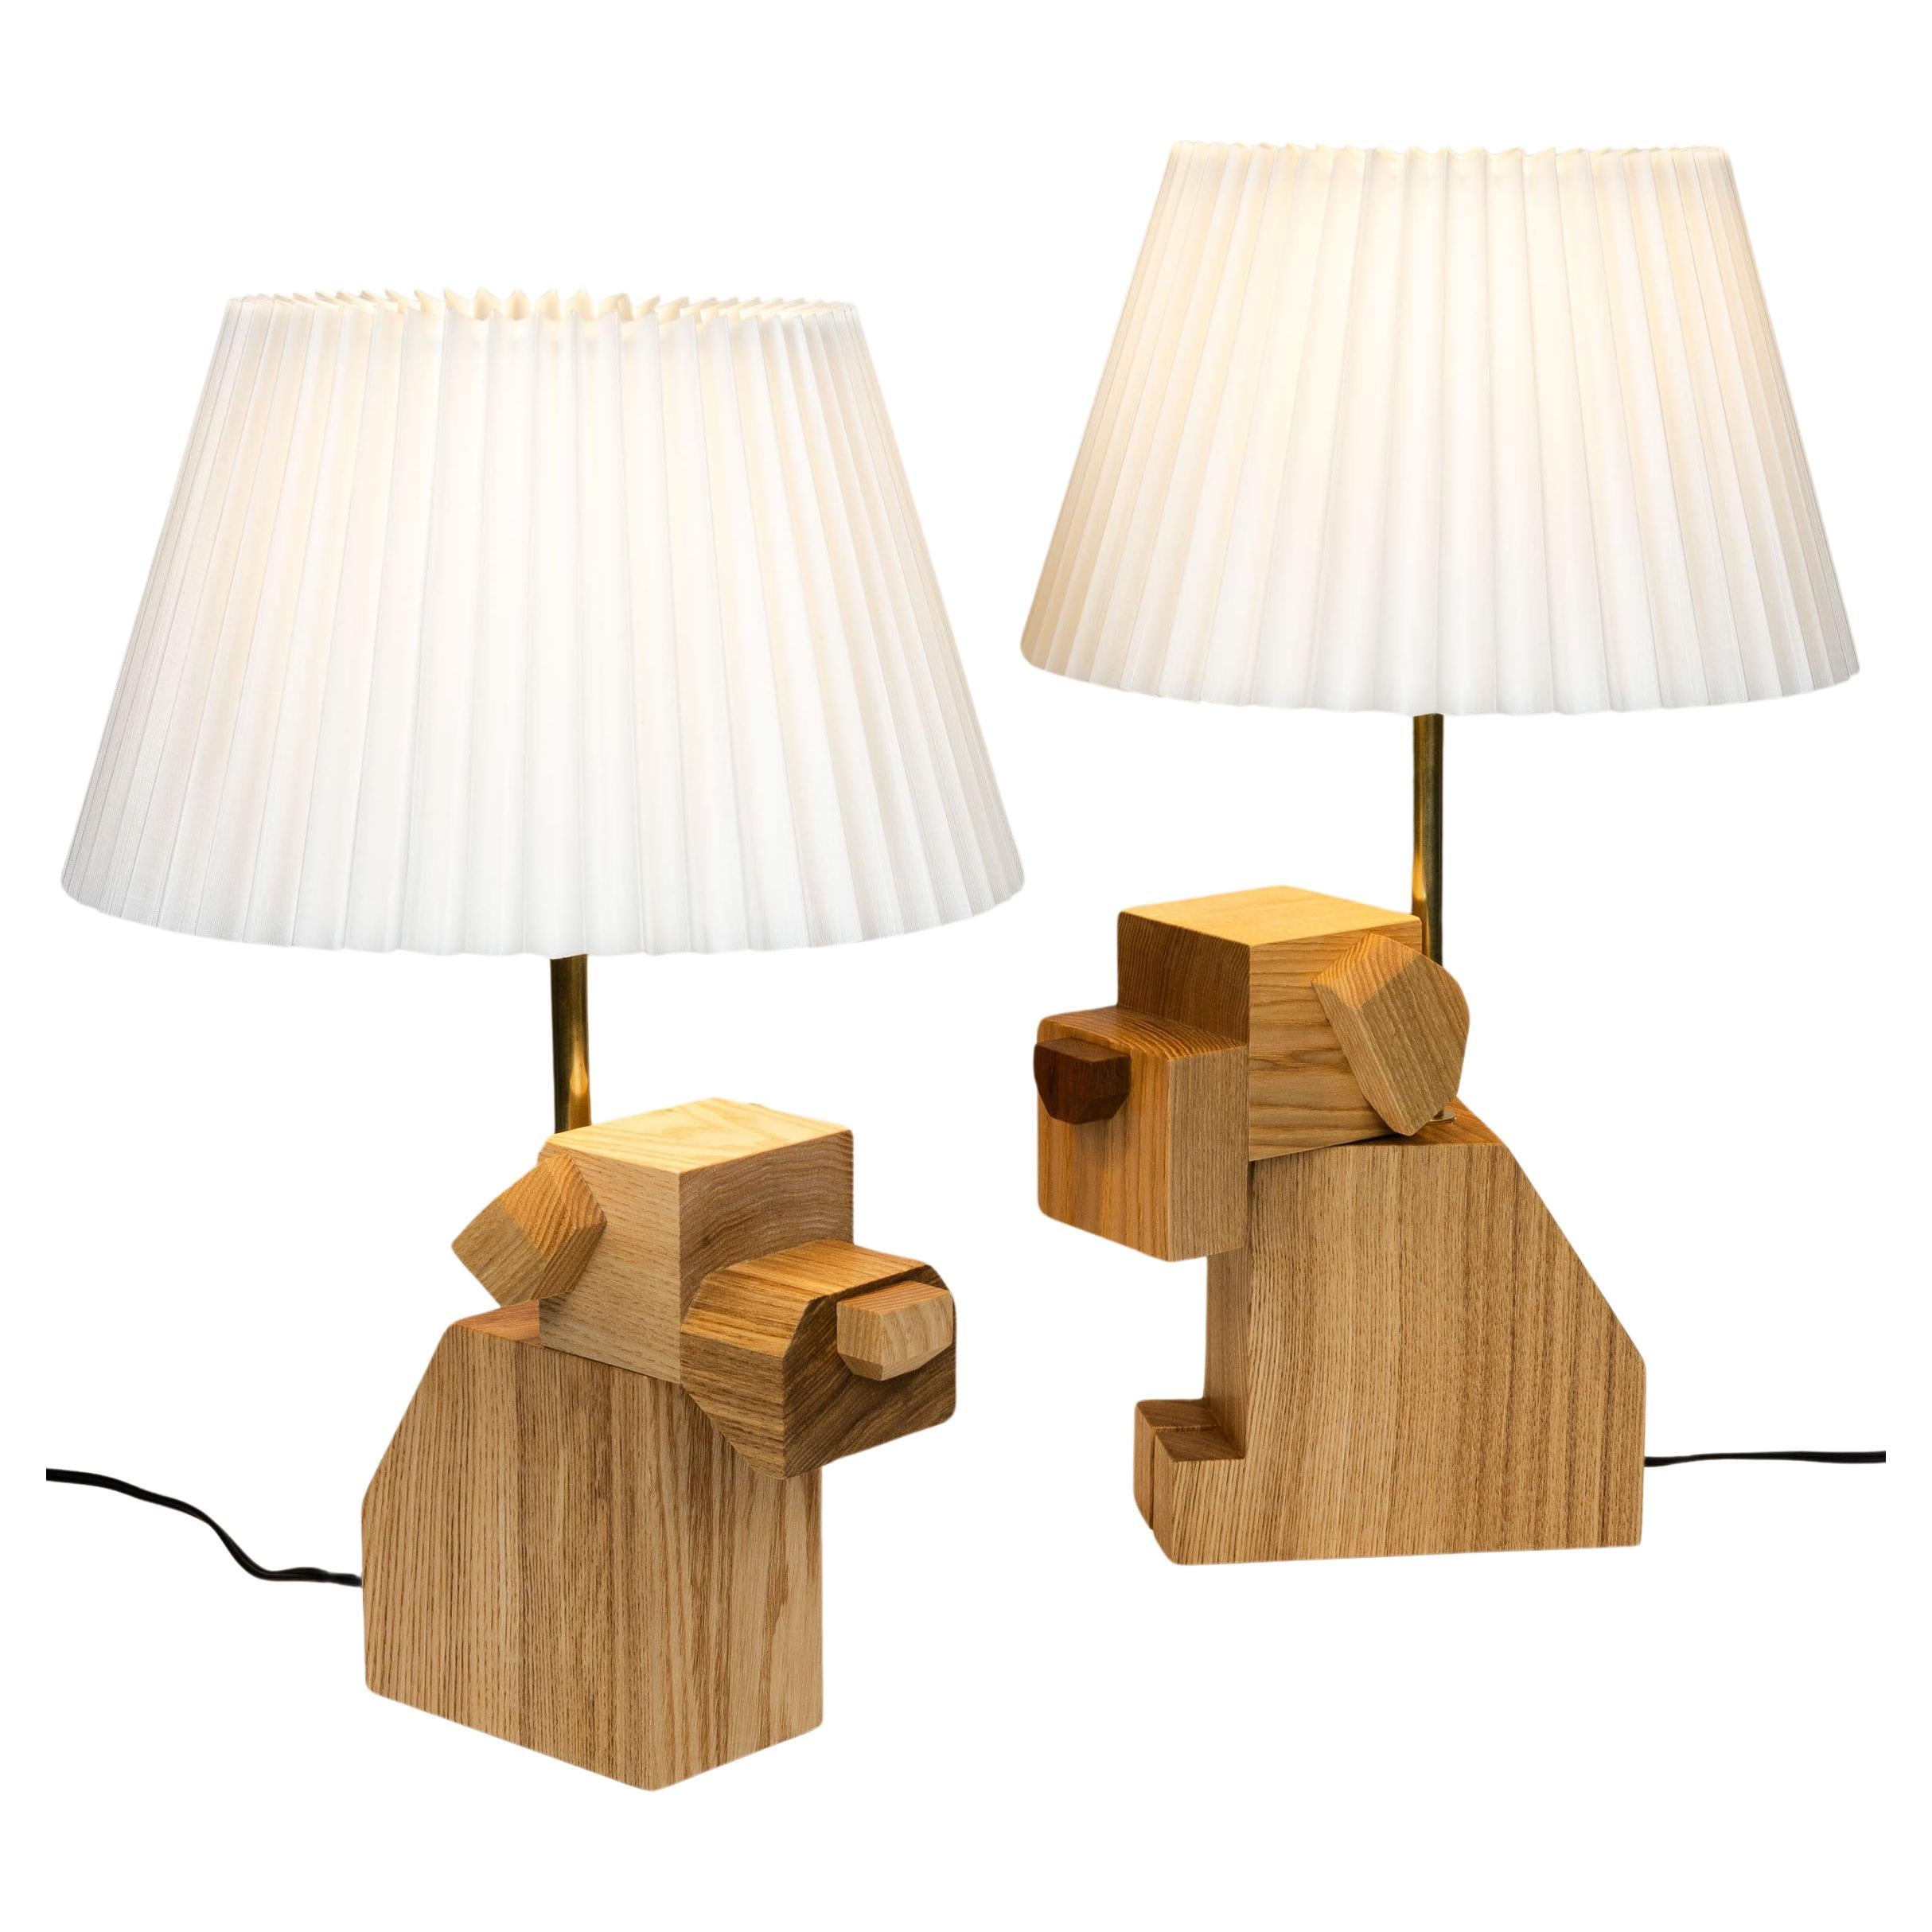 Paire de lampes de table en bois avec abat-jour en tissu blanc, fabriquées à la main, bois dur